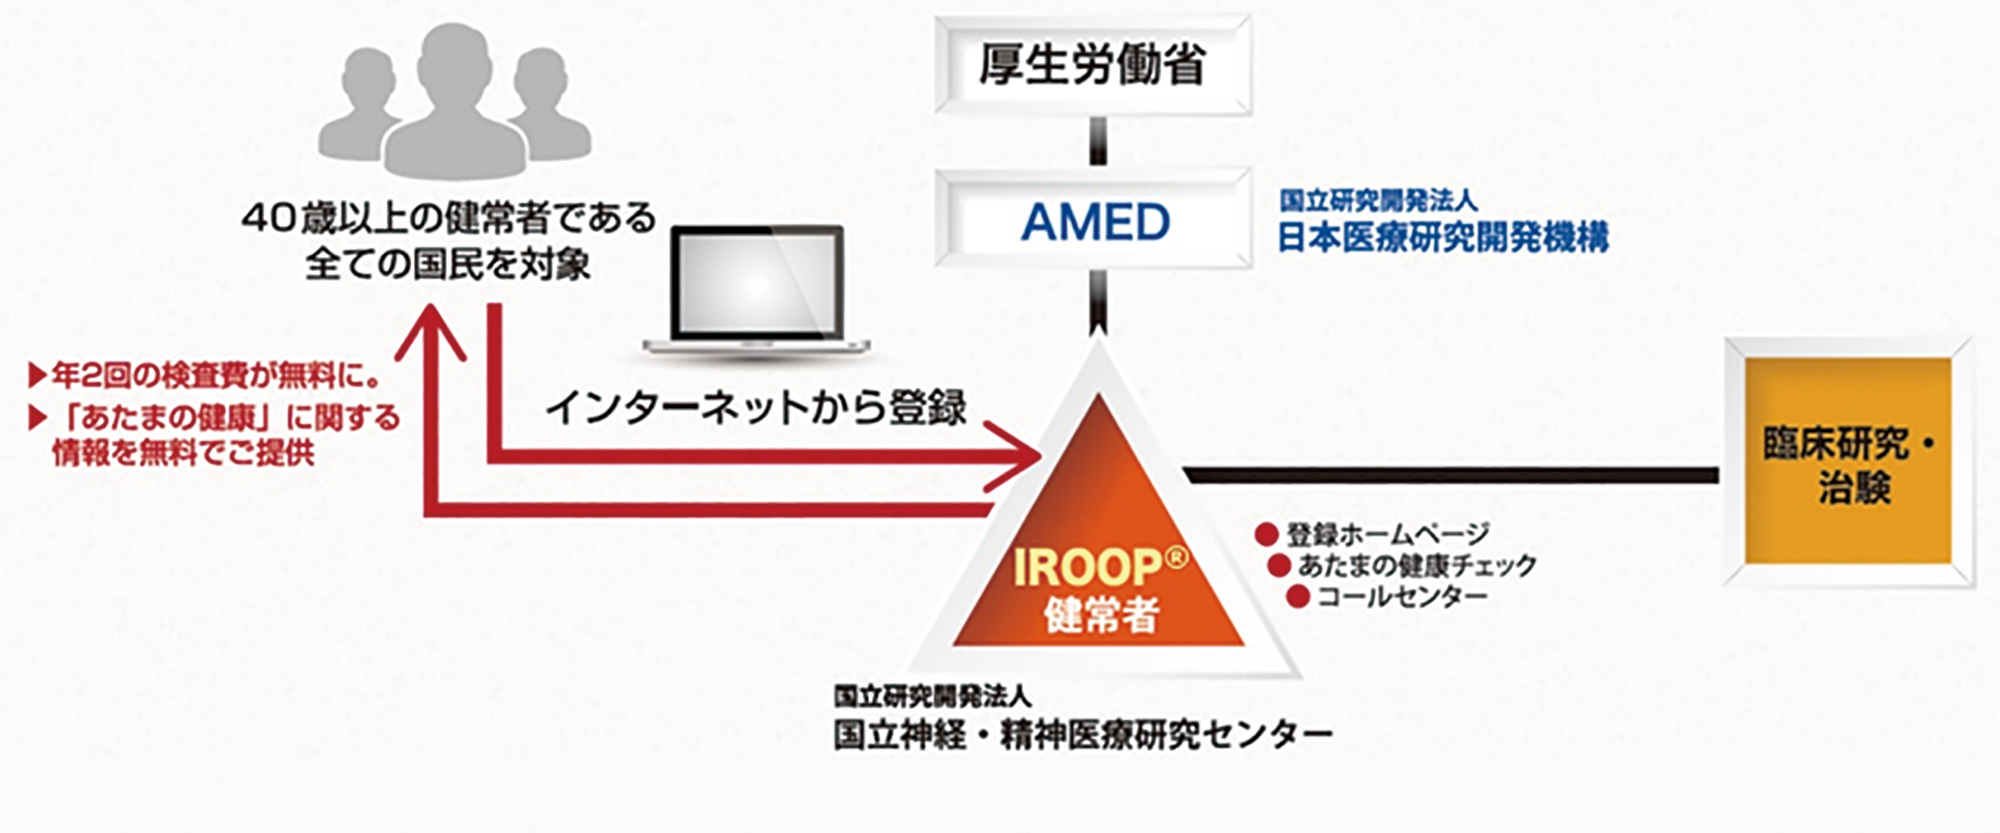 IROOP®の概念図